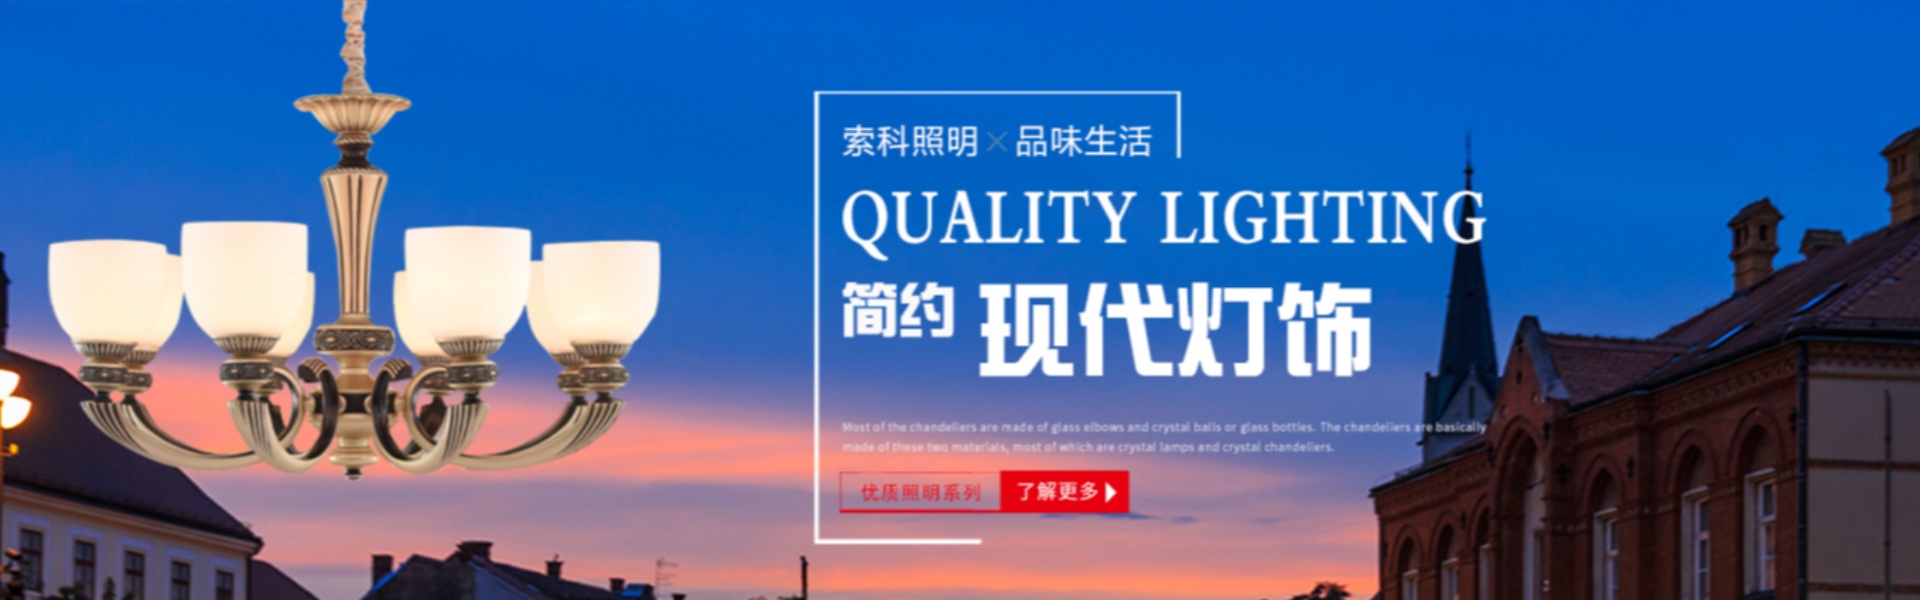 iluminación del hogar, iluminación exterior, iluminación solar,Zhongshan Suoke Lighting Electric Co., Ltd.